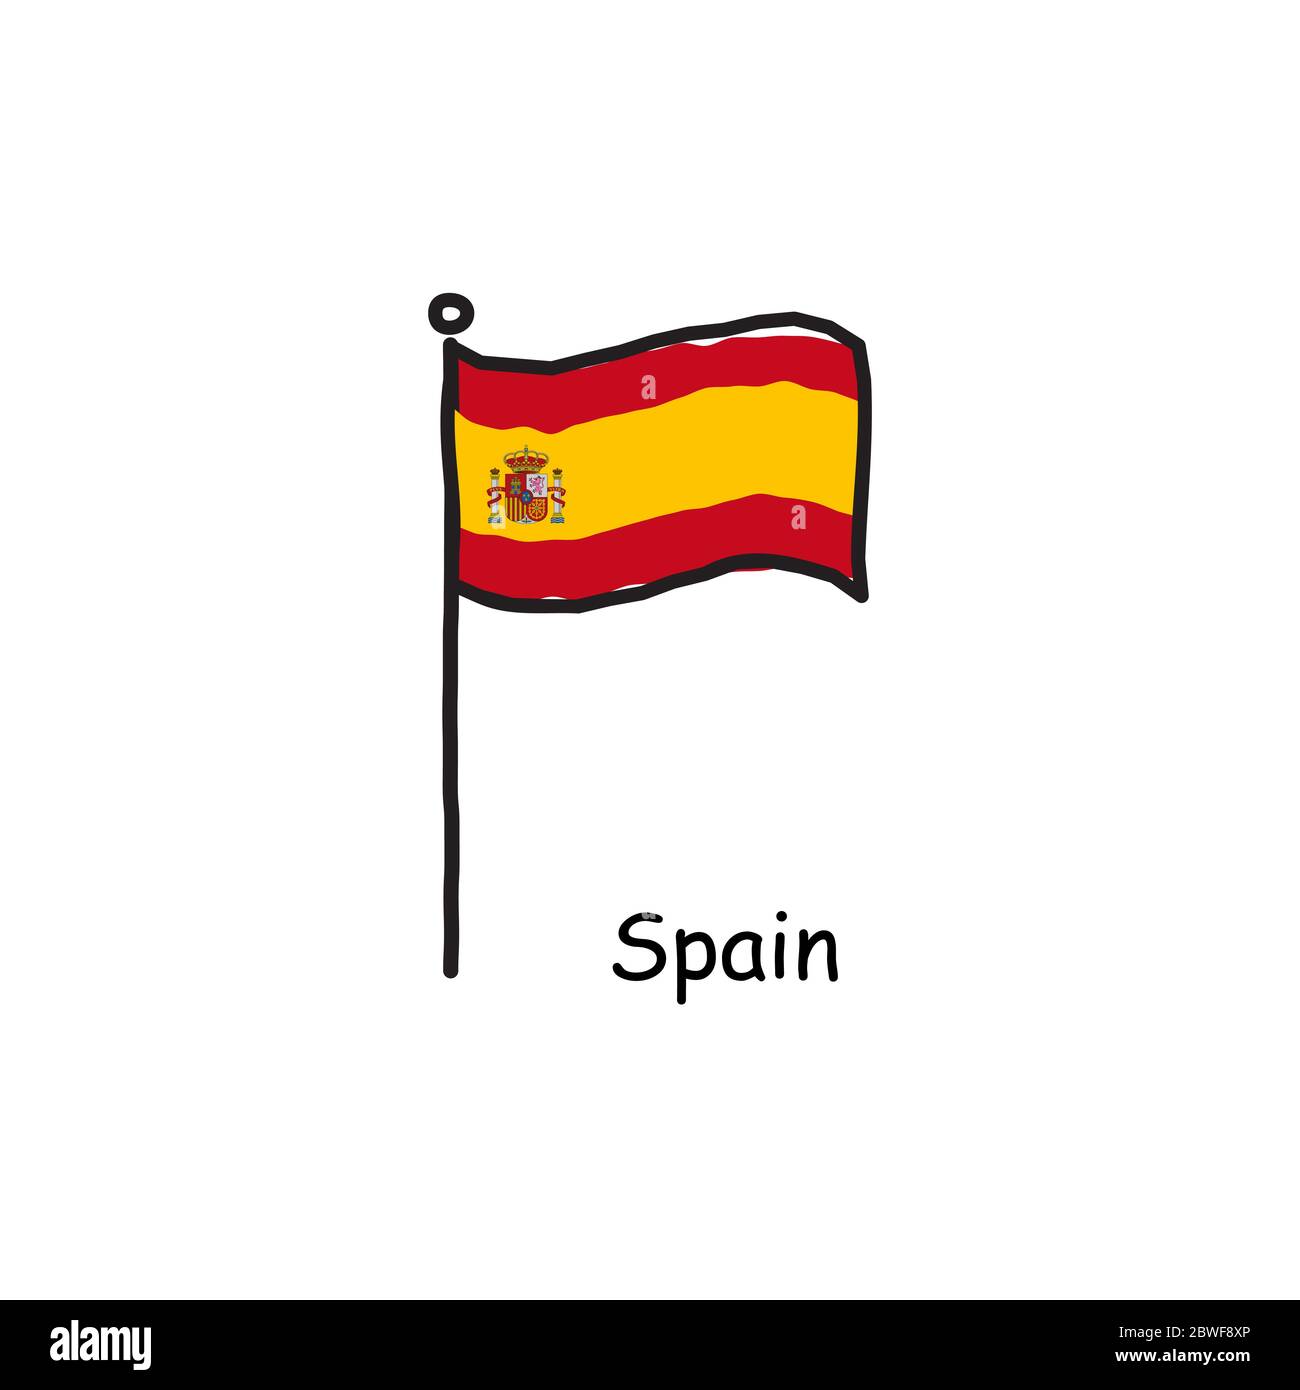 Handgezeichnet Skizzenhafte Spanien Flagge Auf Der Flagge Pole Drei Farbe Flagge Stock Vektor Illustration Isoliert Auf Weissem Hintergrund Stock Vektorgrafik Alamy